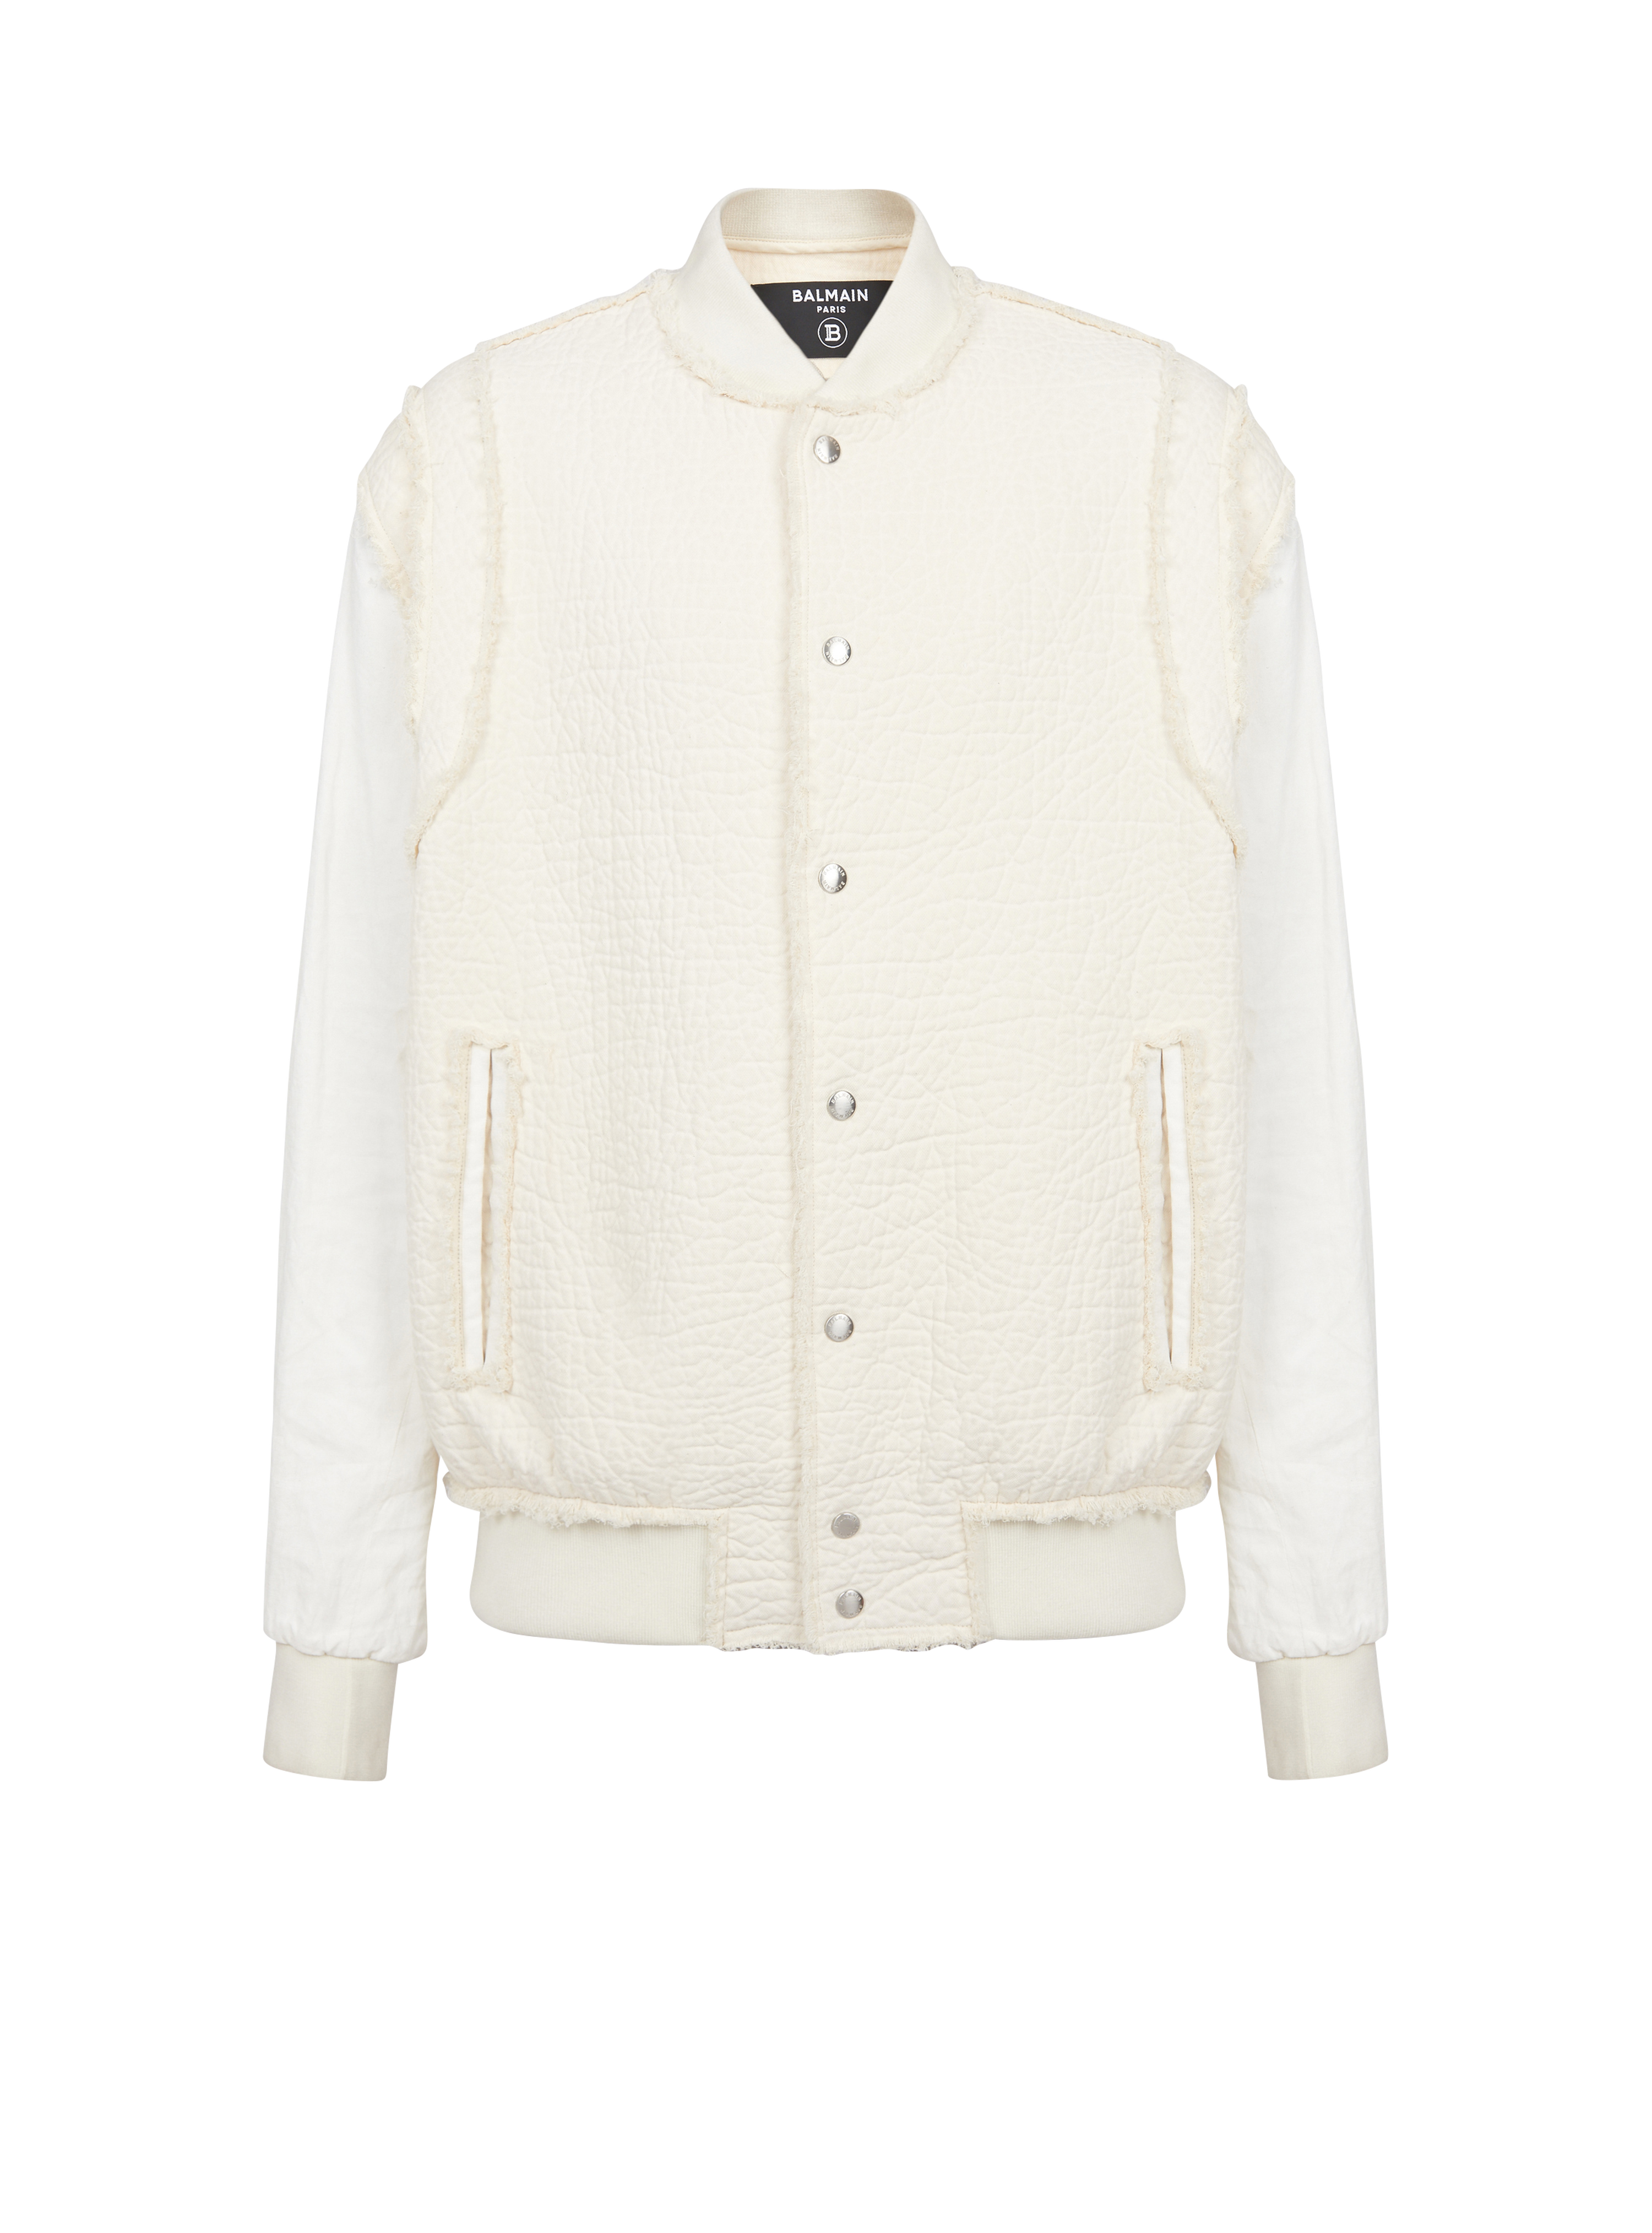 Textured cotton bomber jacket, white